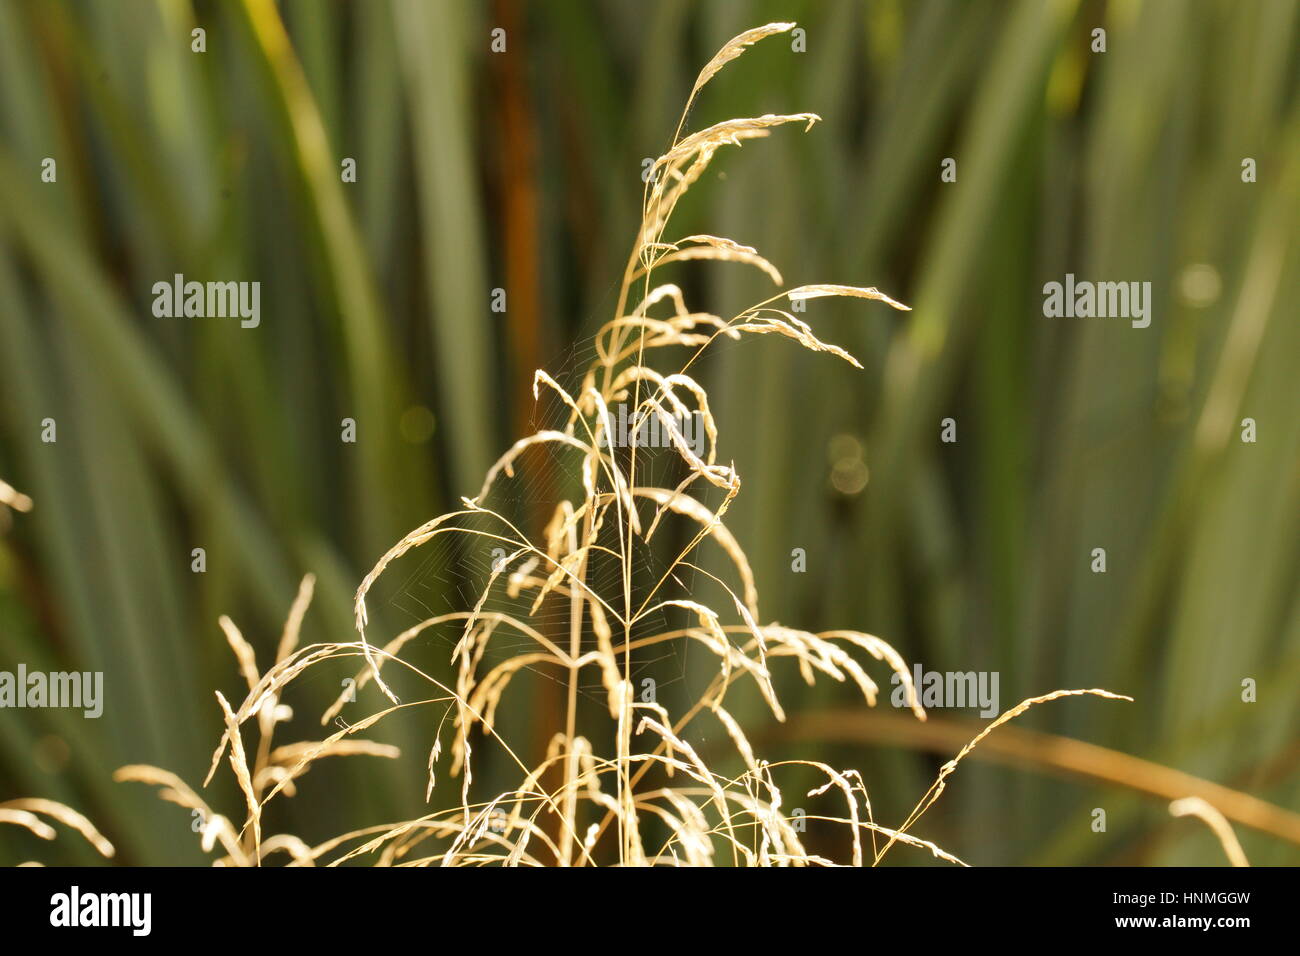 Cobweb in Autumn grass Stock Photo